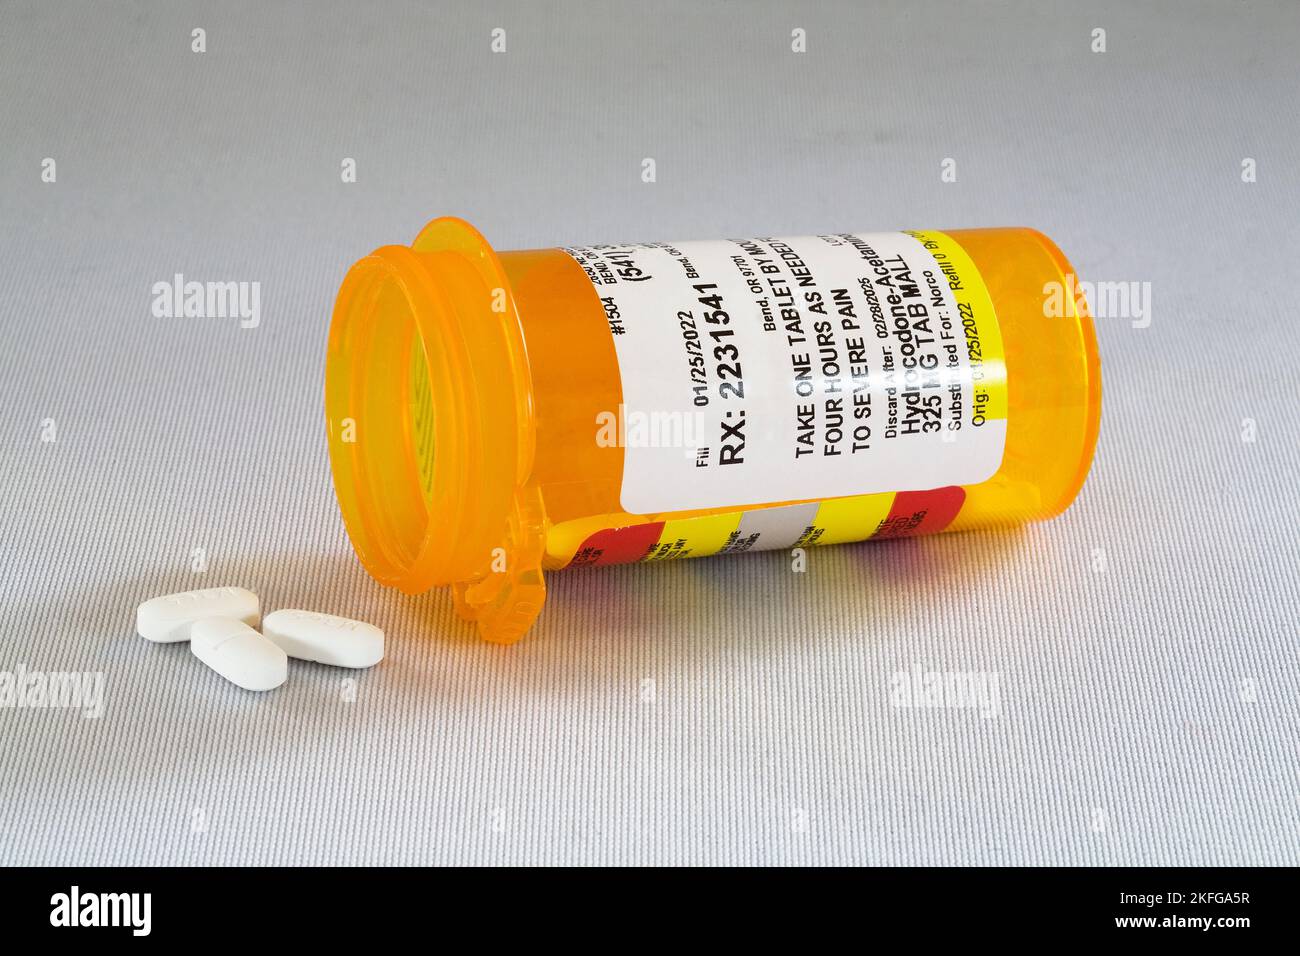 Un contenitore di idrocodina, l'addicting oppioide antidolorifico prescritto da molti medici. Molte persone sono diventate tossicodipendenti e molte altre sono morte fr Foto Stock